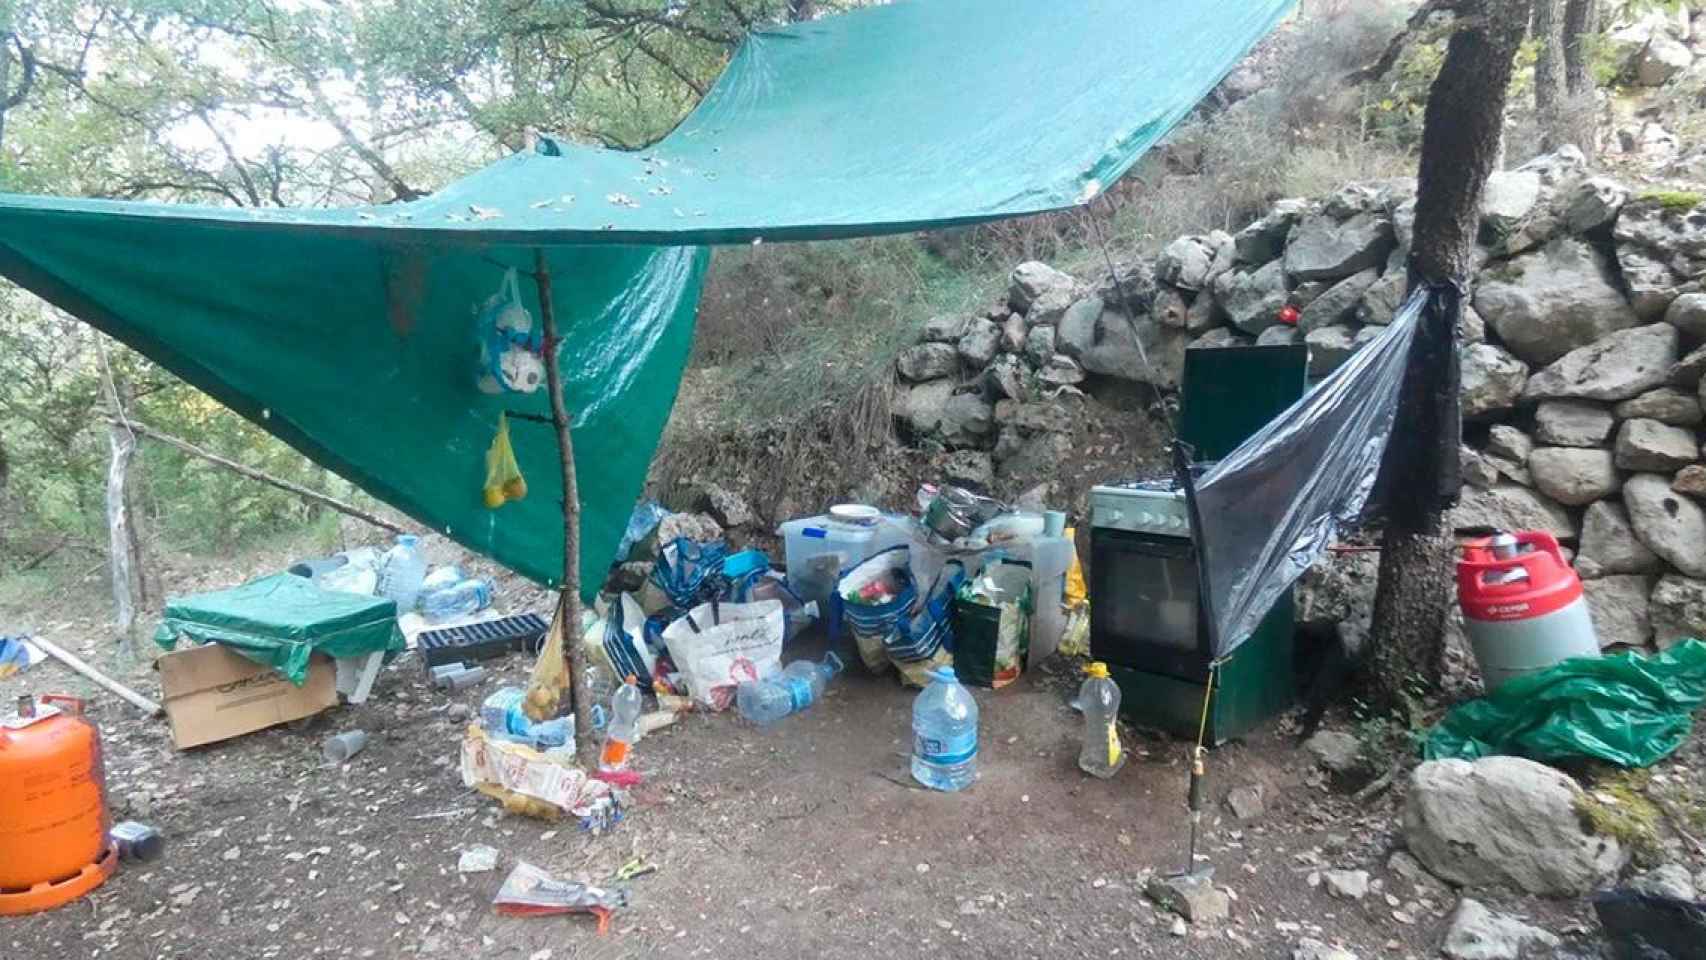 Campamento de la plantación de marihuana desmantelada en Fígols i Alinyà (Lleida) / MOSSOS D'ESQUADRA